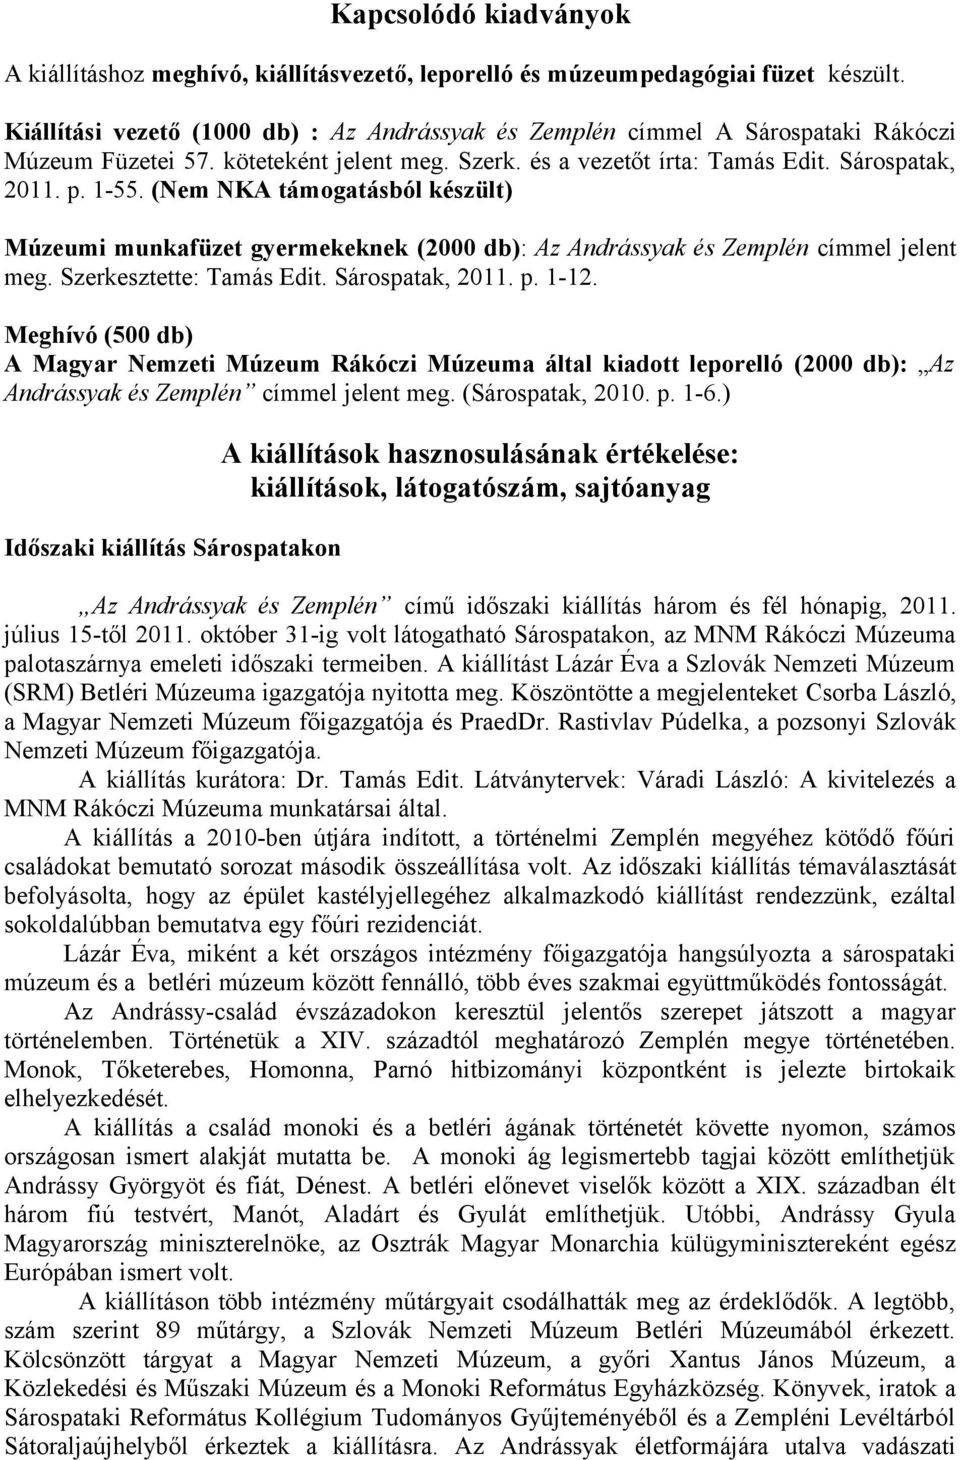 (Nem NKA támogatásból készült) Múzeumi munkafüzet gyermekeknek (2000 db): Az Andrássyak és Zemplén címmel jelent meg. Szerkesztette: Tamás Edit. Sárospatak, 2011. p. 1-12.